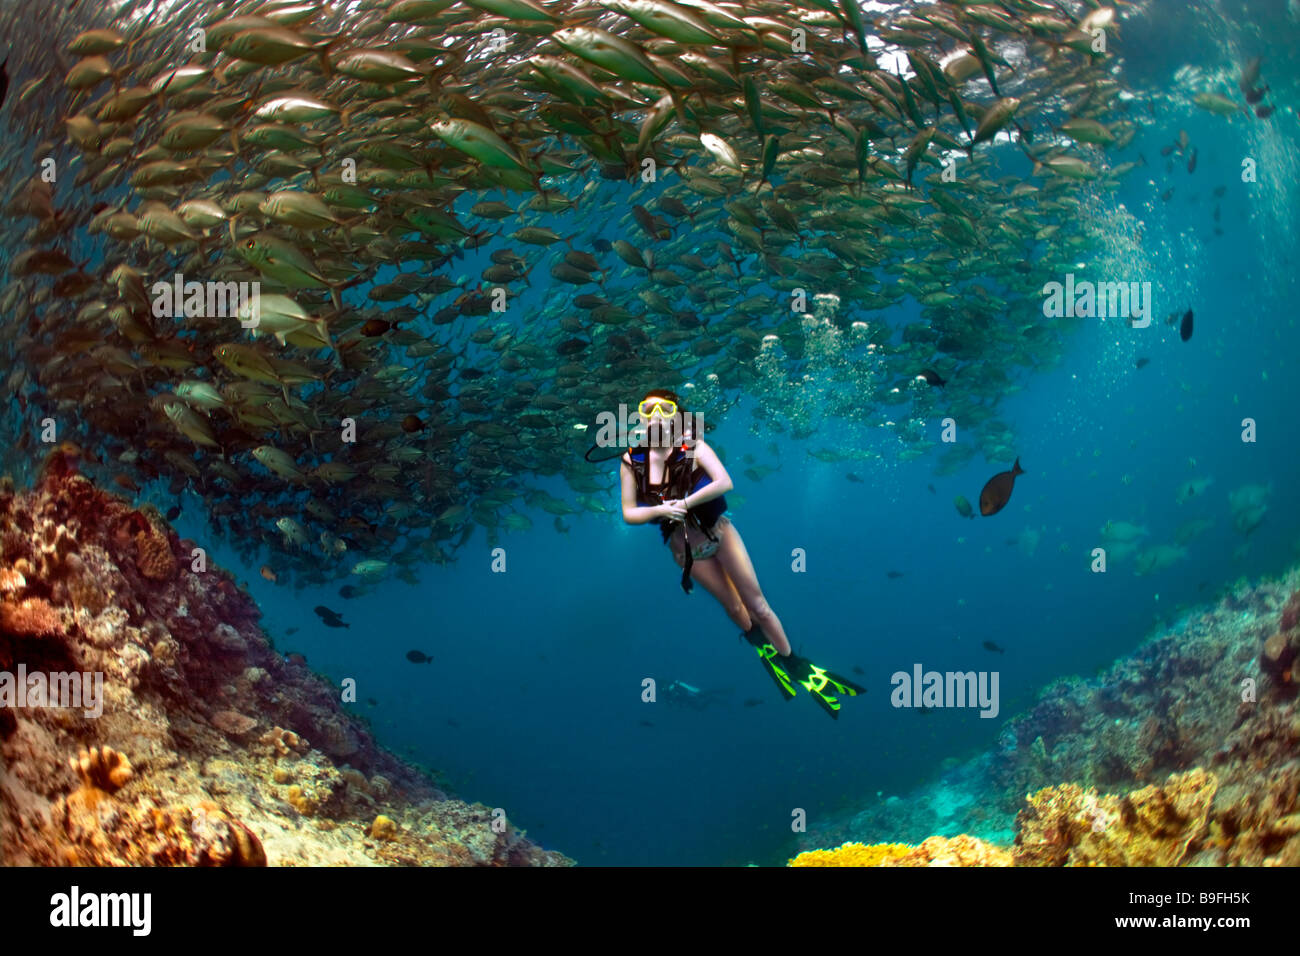 A scuba diving girl in a bikini poses beneath swirling Bigeye Trevally jackfish in the warm waters at Barracuda Point, Sipadan. Stock Photo